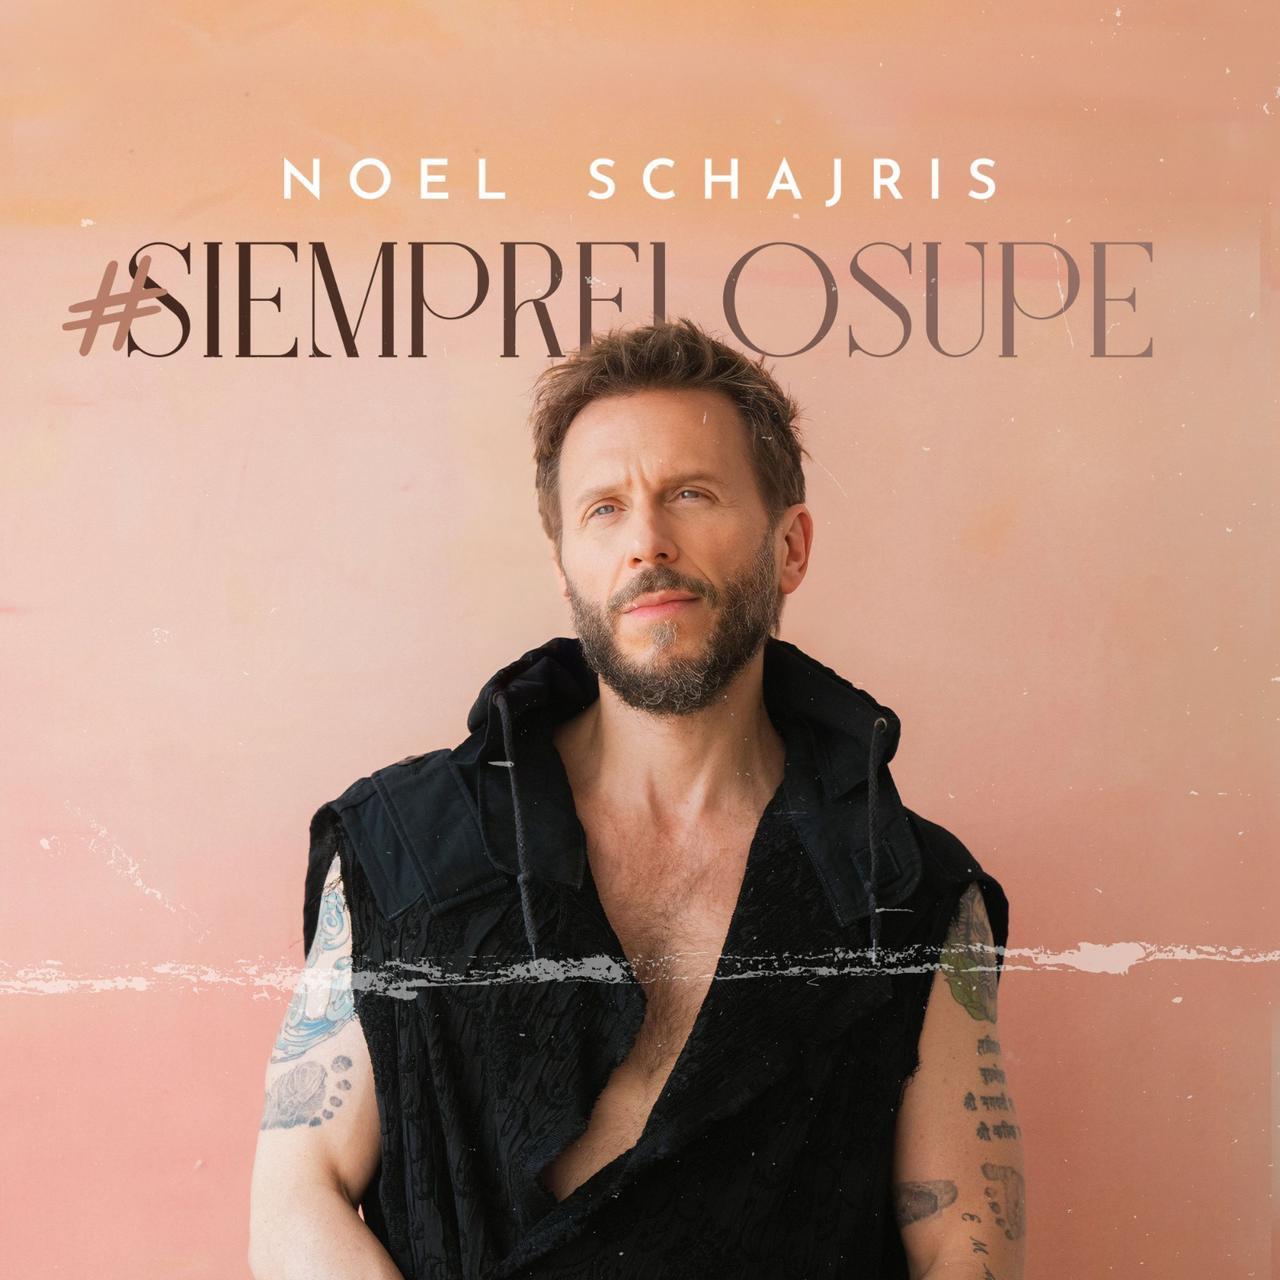 Nuevo disco Noel Schajris, Siempre lo supe